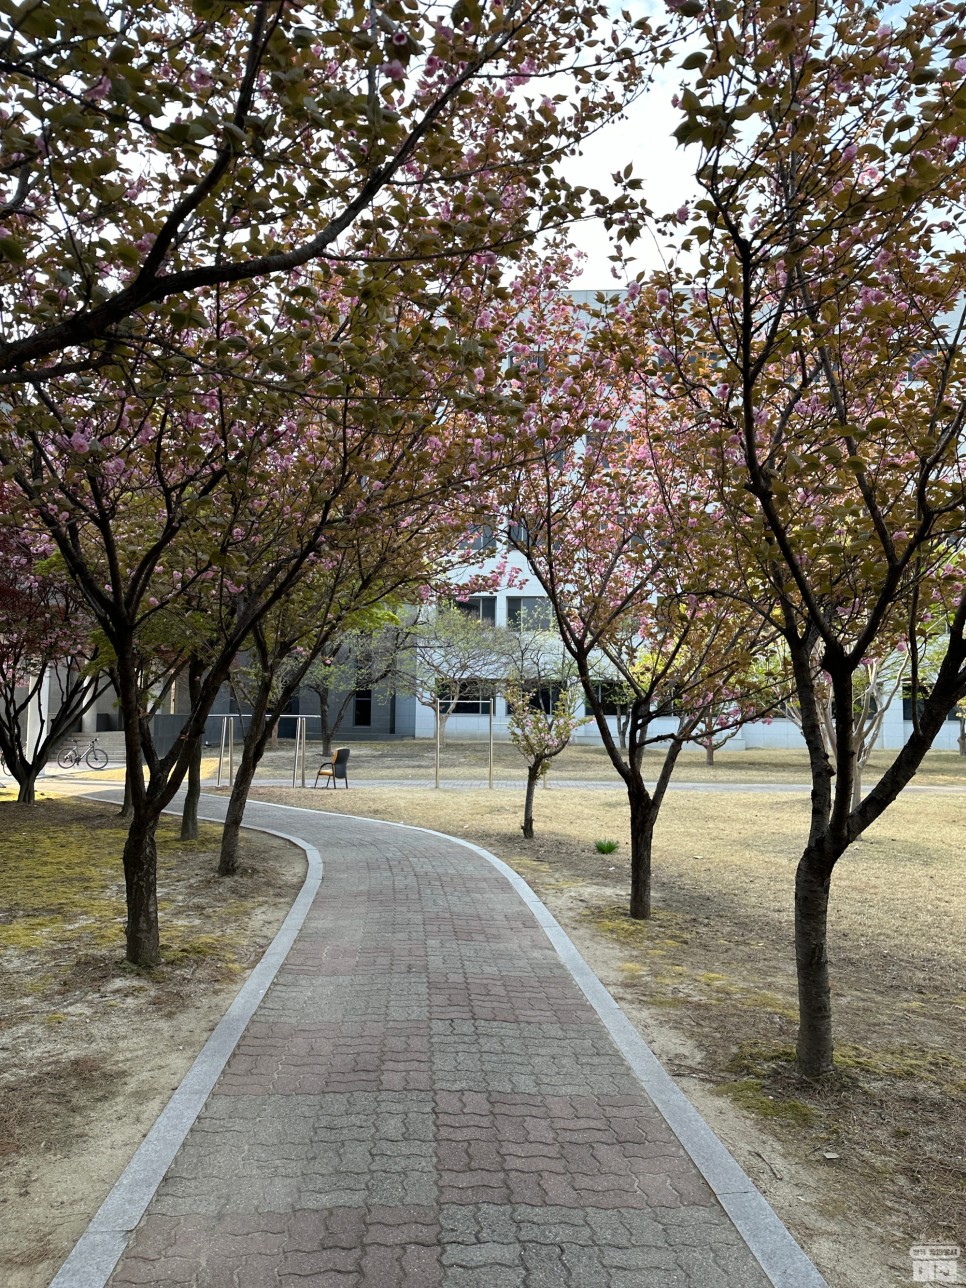 대전 겹벚꽃 명소 카이스트 개화시기 실시간